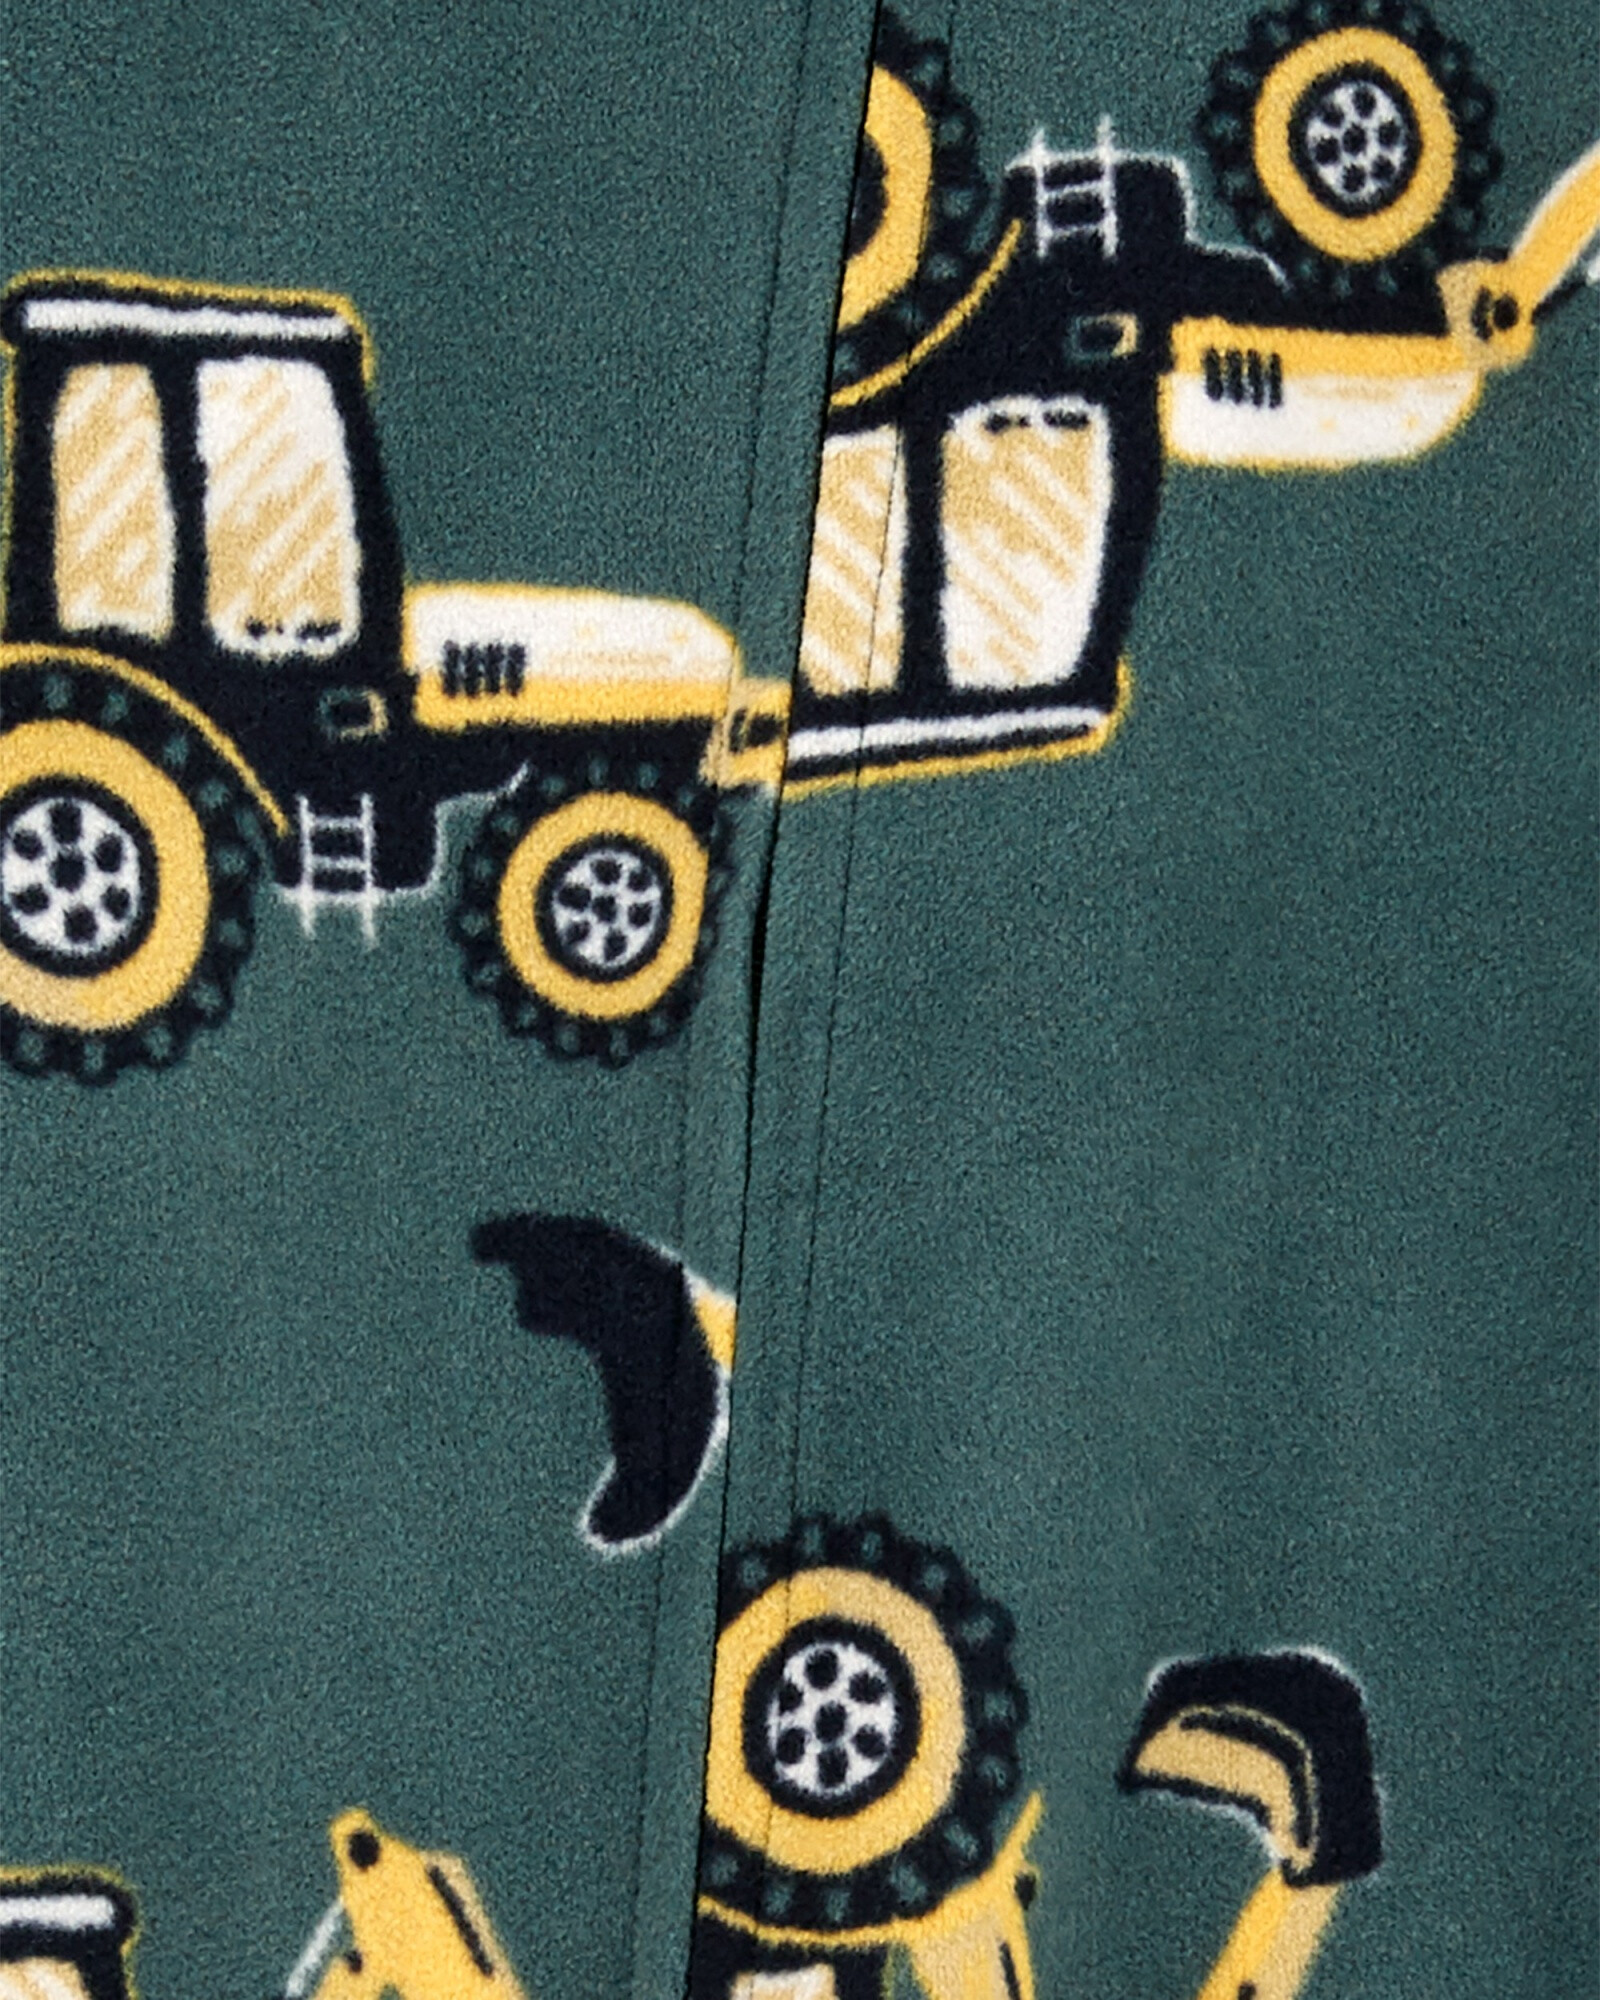 Pijama una pieza de micropolar, con pie, diseño excavadora Sin color